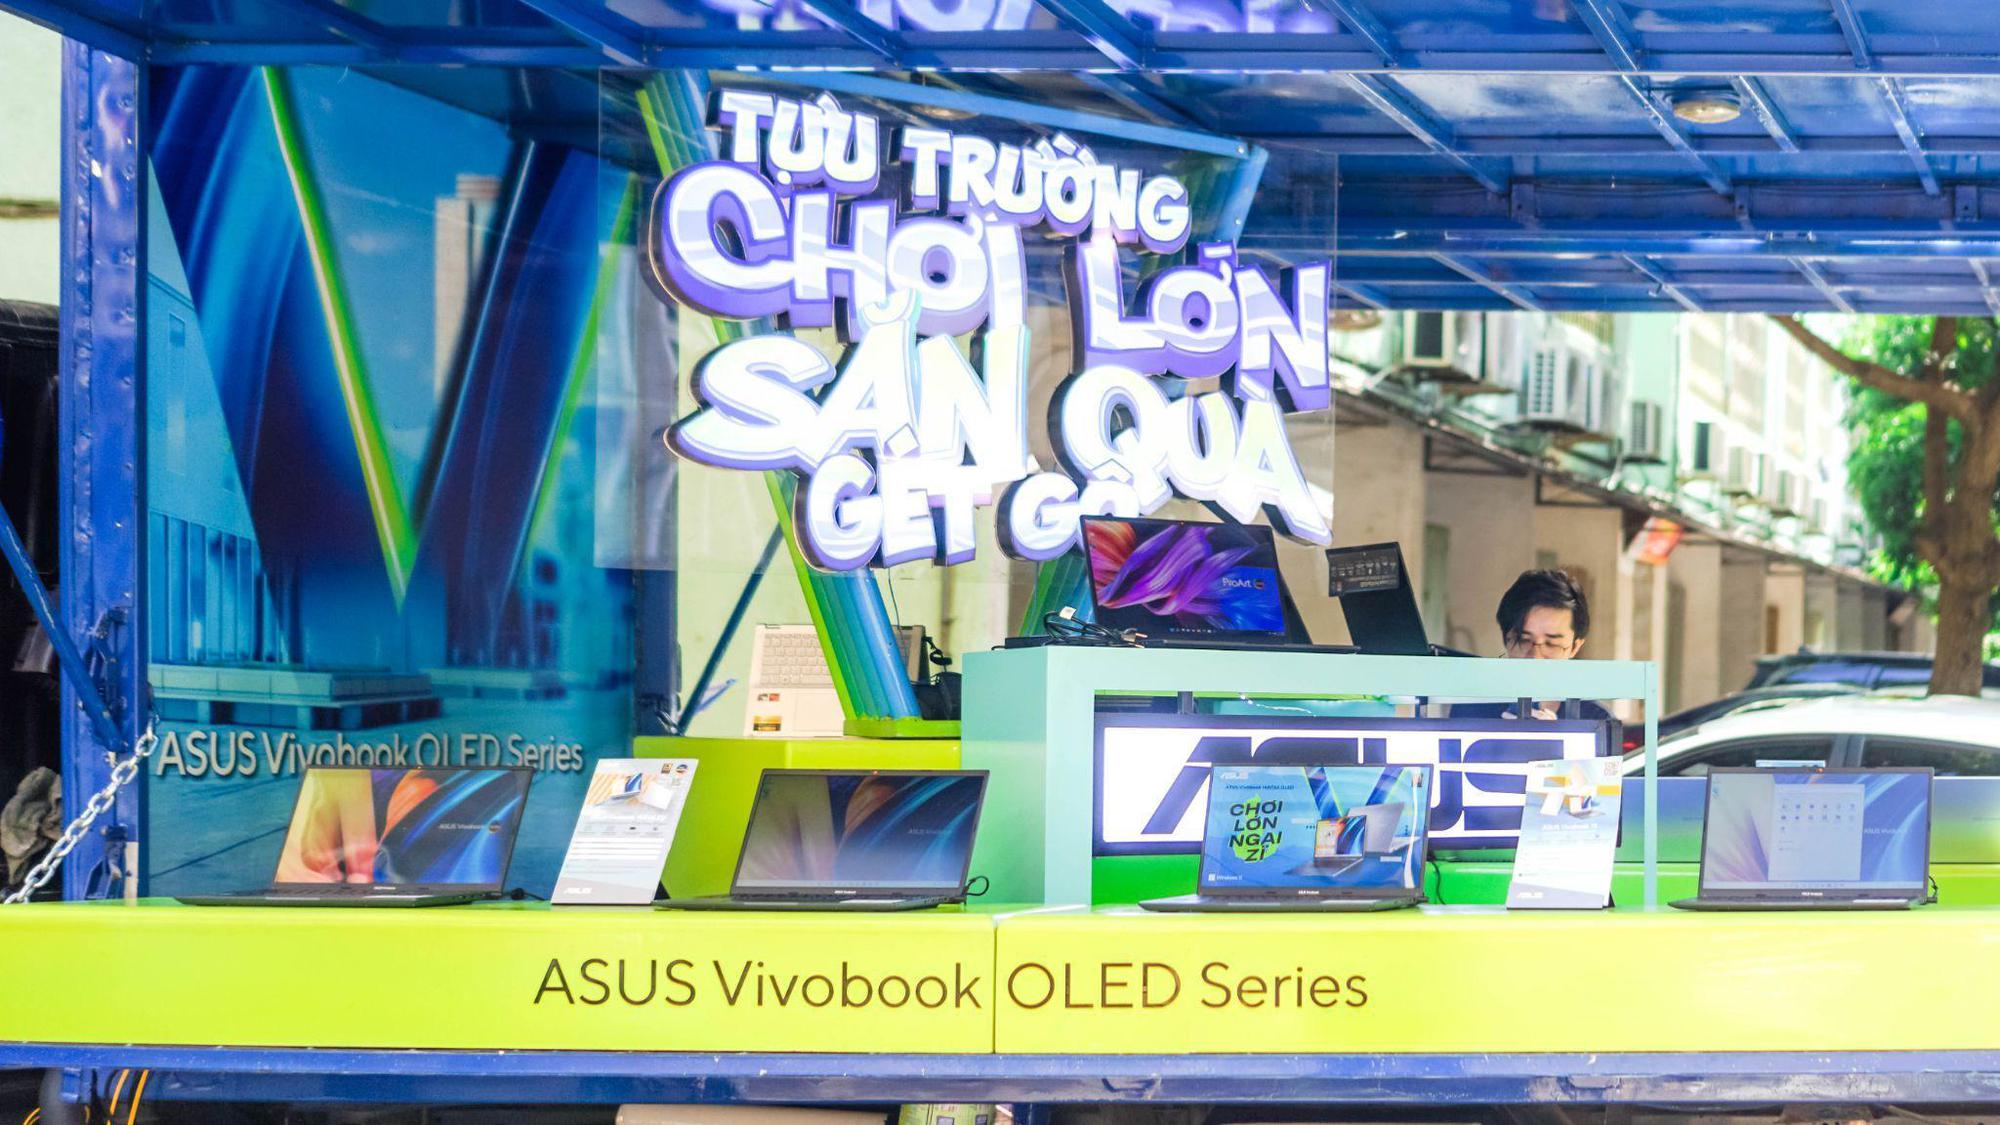 Chơi lớn theo cách của ASUS, đi xe xuyên Việt mang bộ sản phẩm siêu đỉnh tới từng trường Đại học - Ảnh 6.